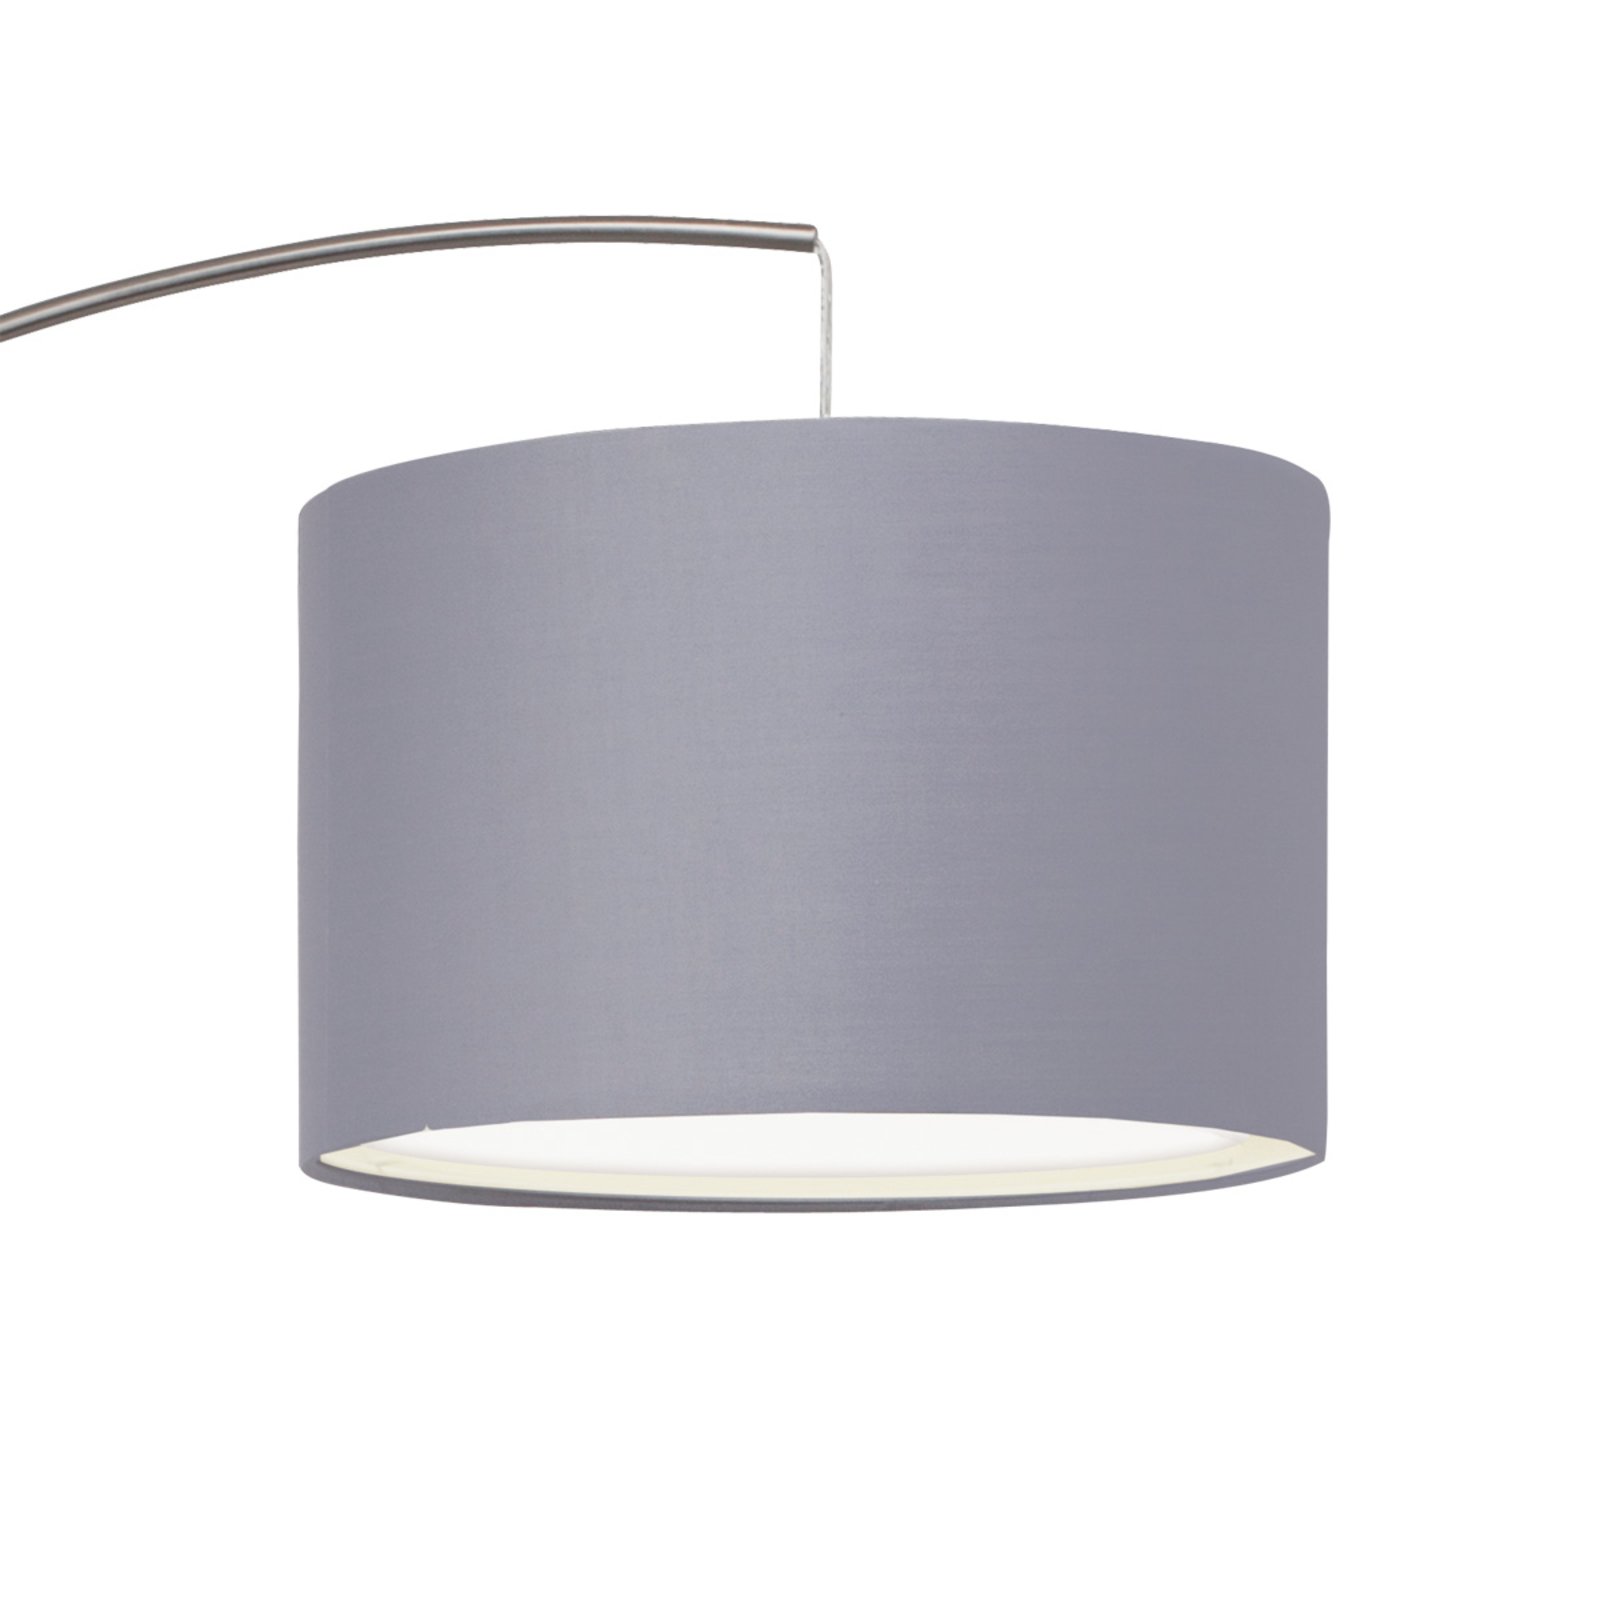 Classic arc lamp Clarie, grey